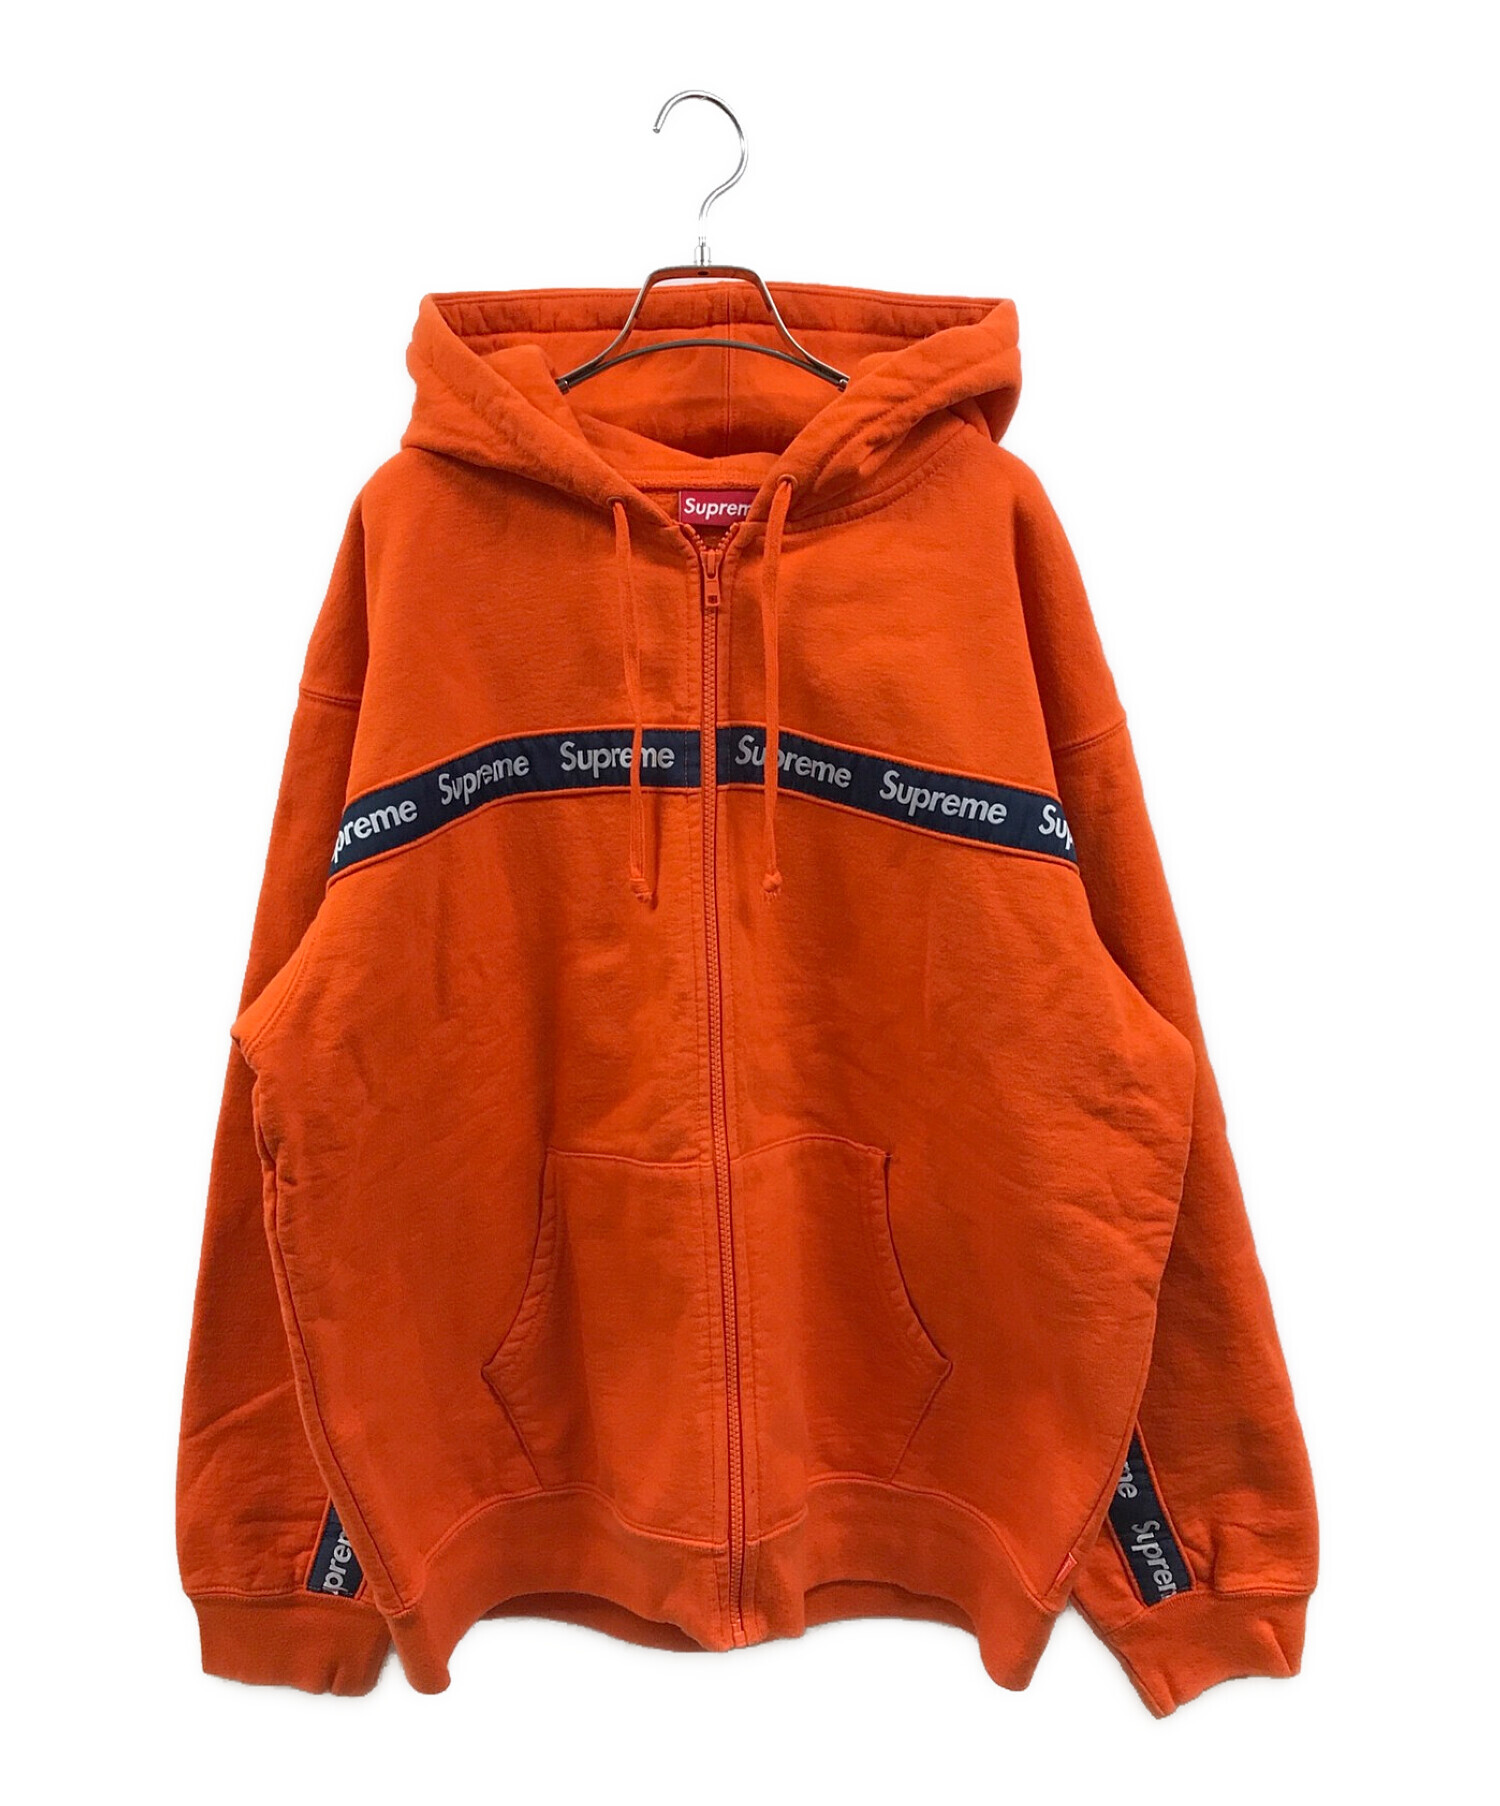 text stripe zip up hooded sweatshirt